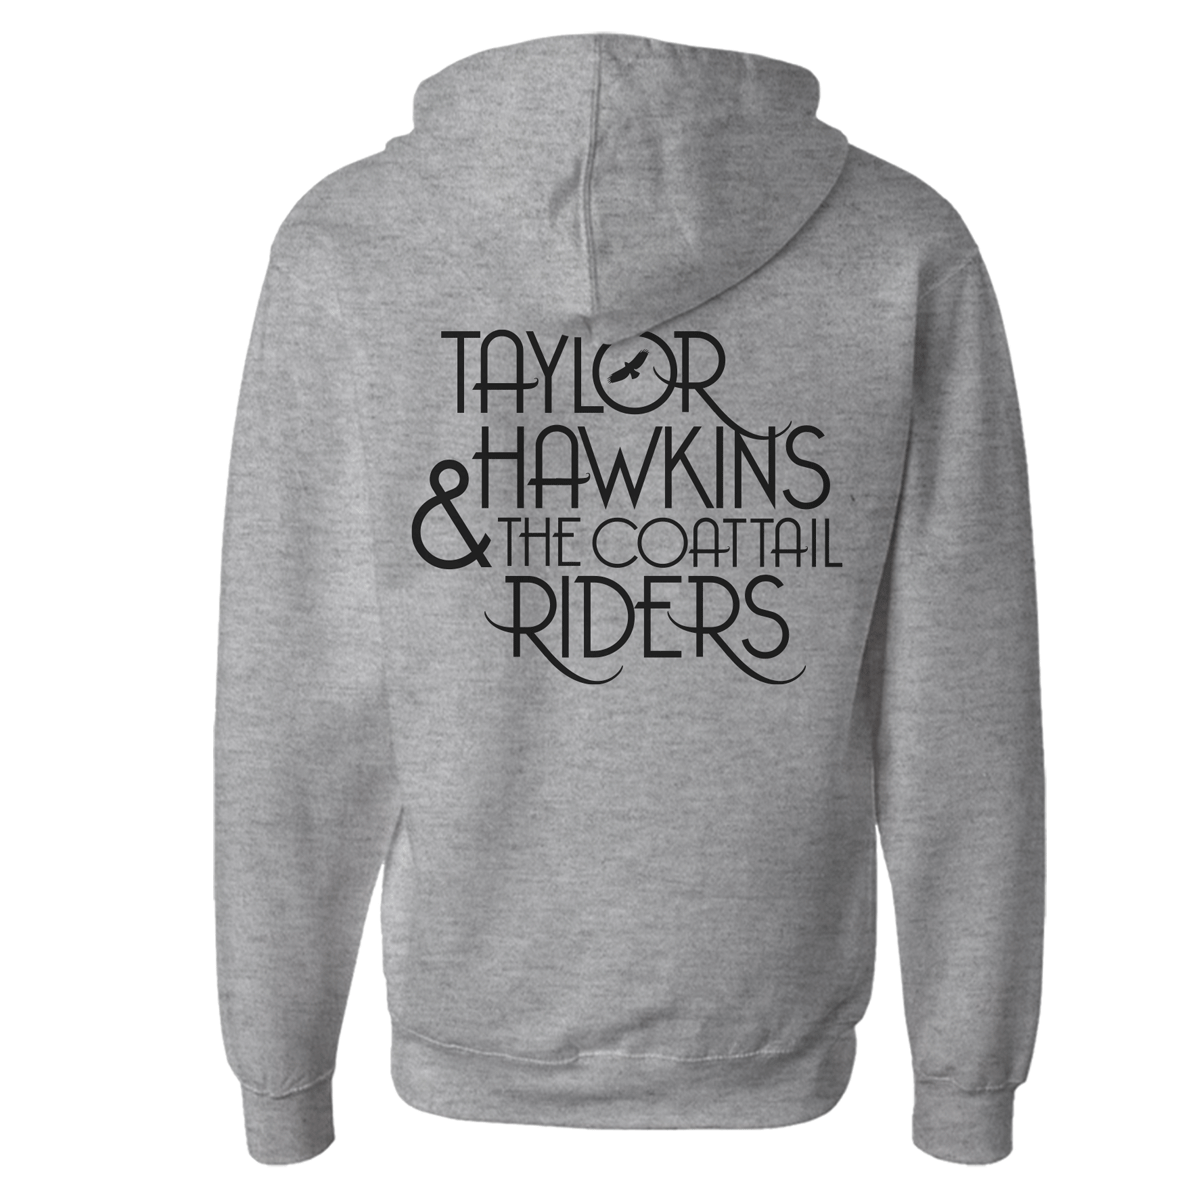 Taylor Hawkins & The Coattail Riders – Zip Hoodie